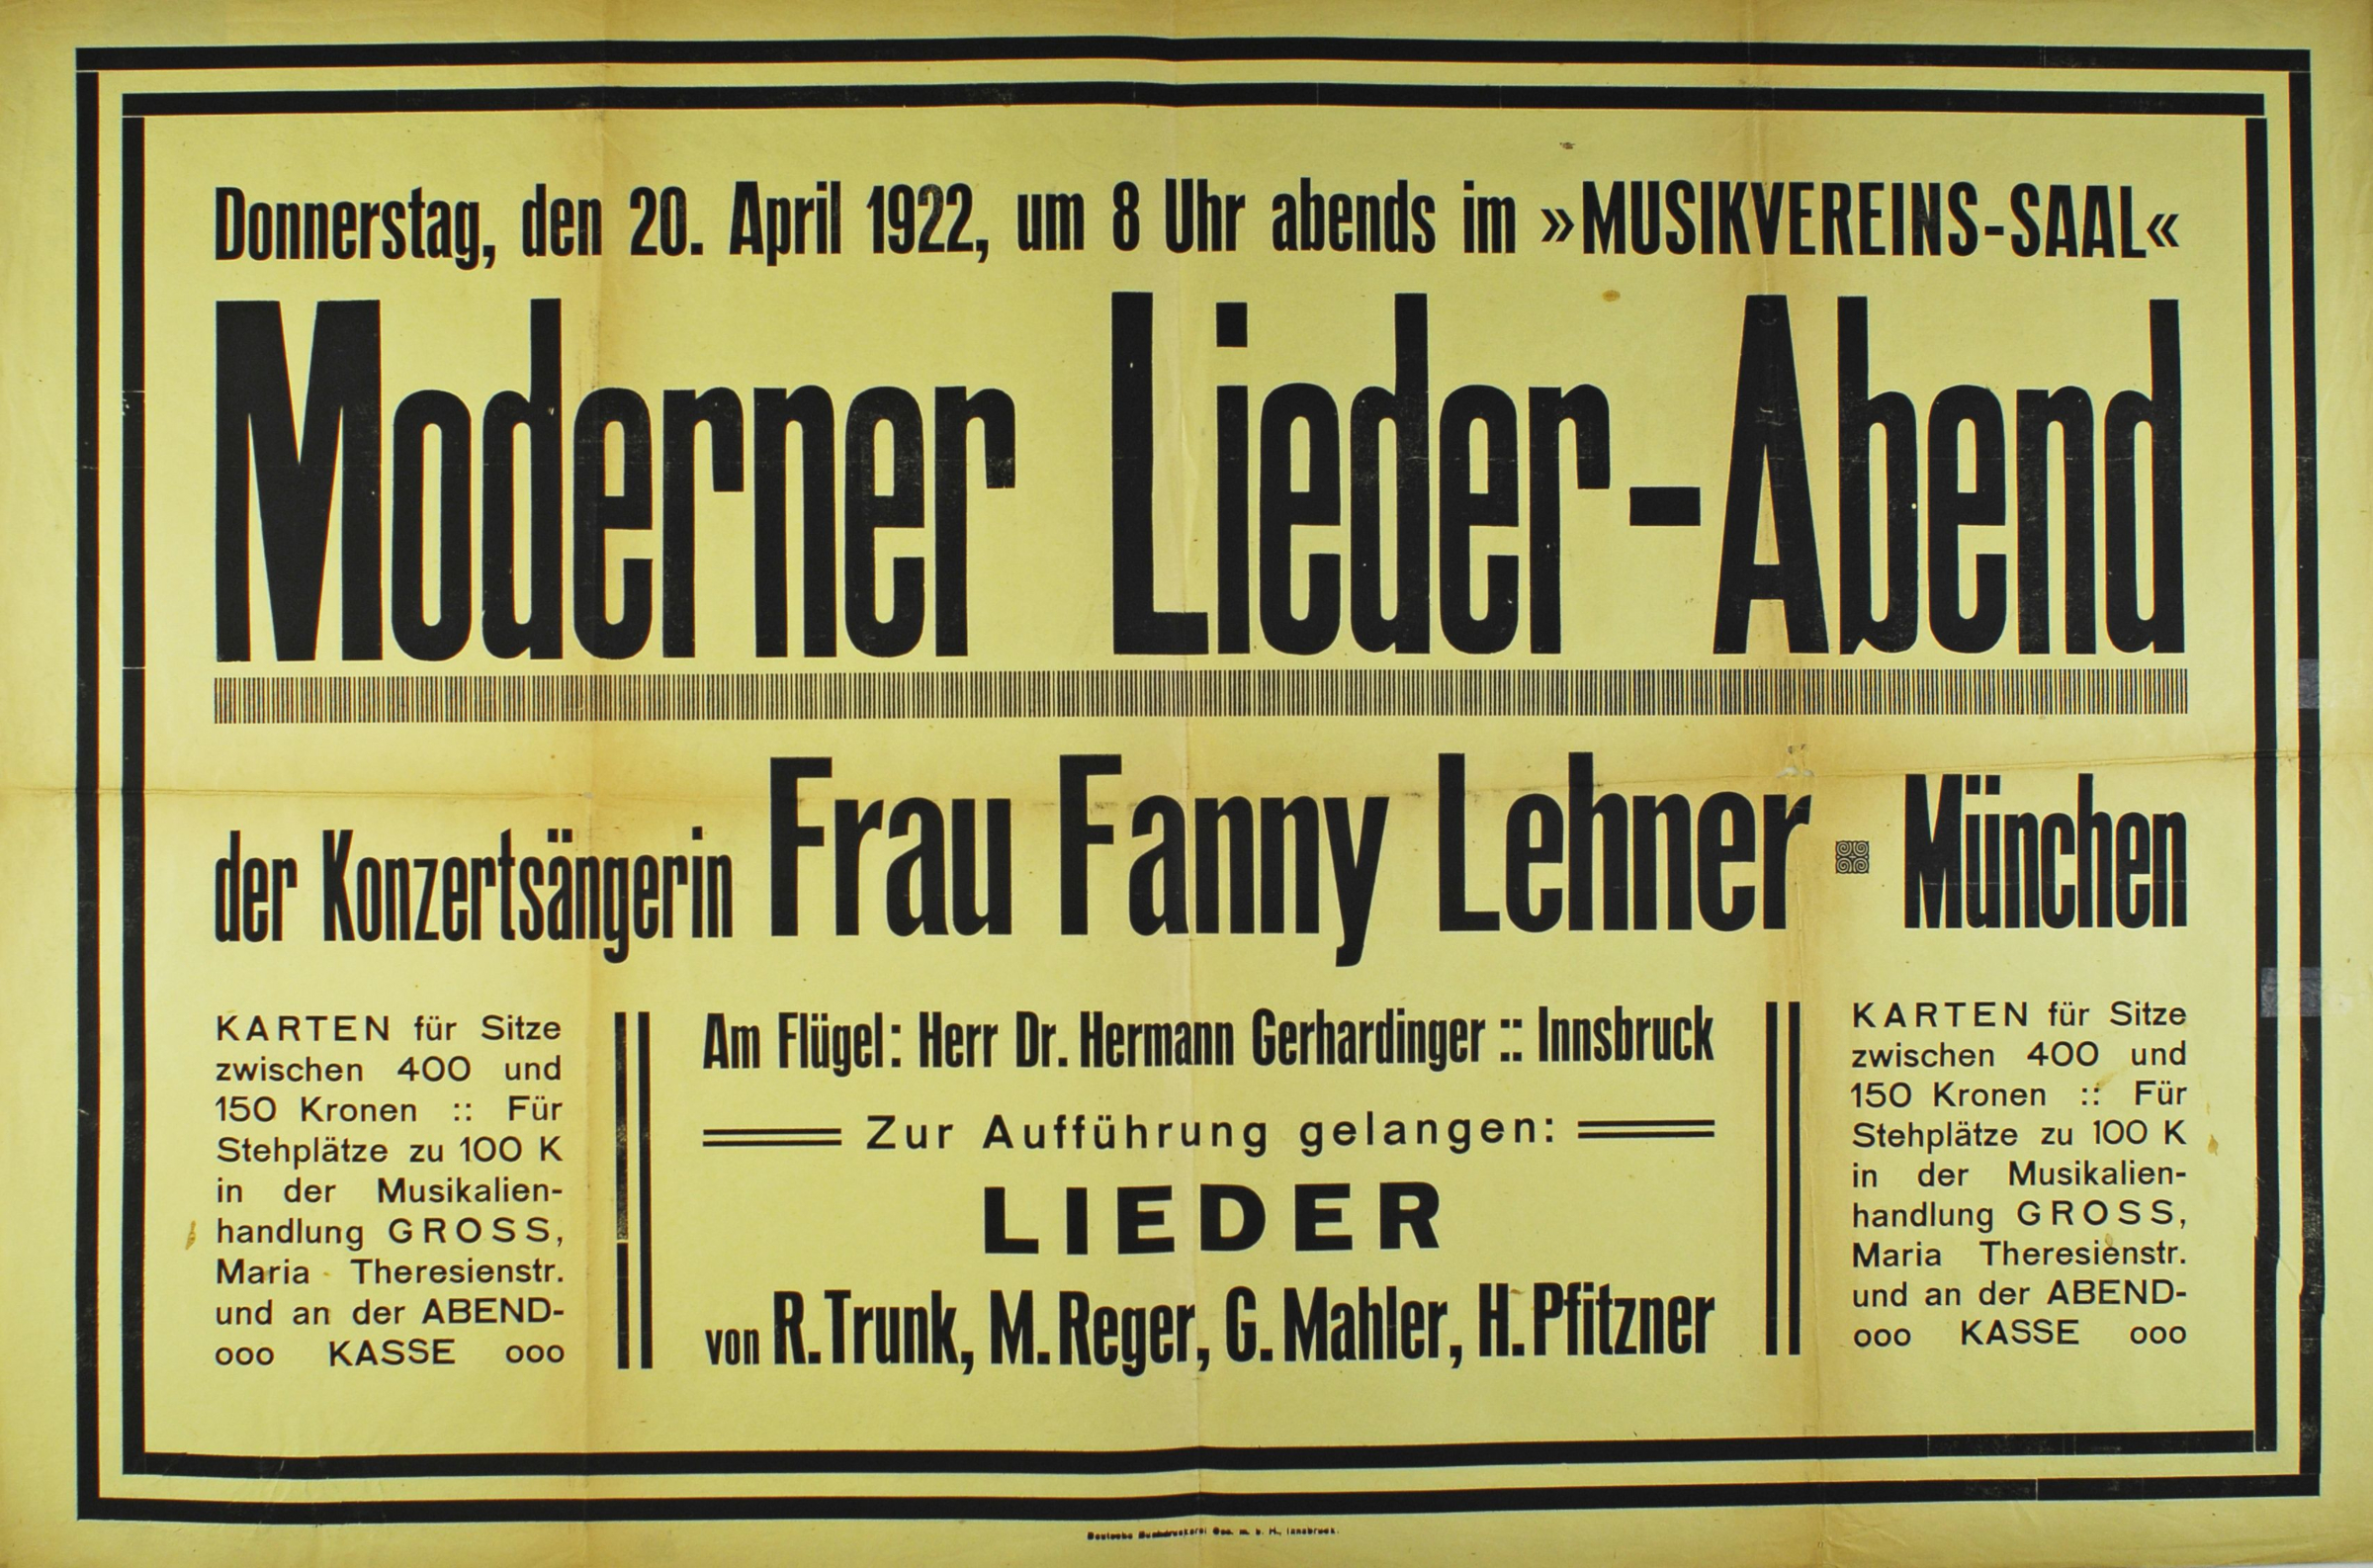 Ein Liederabend Mit Fanny Lehner